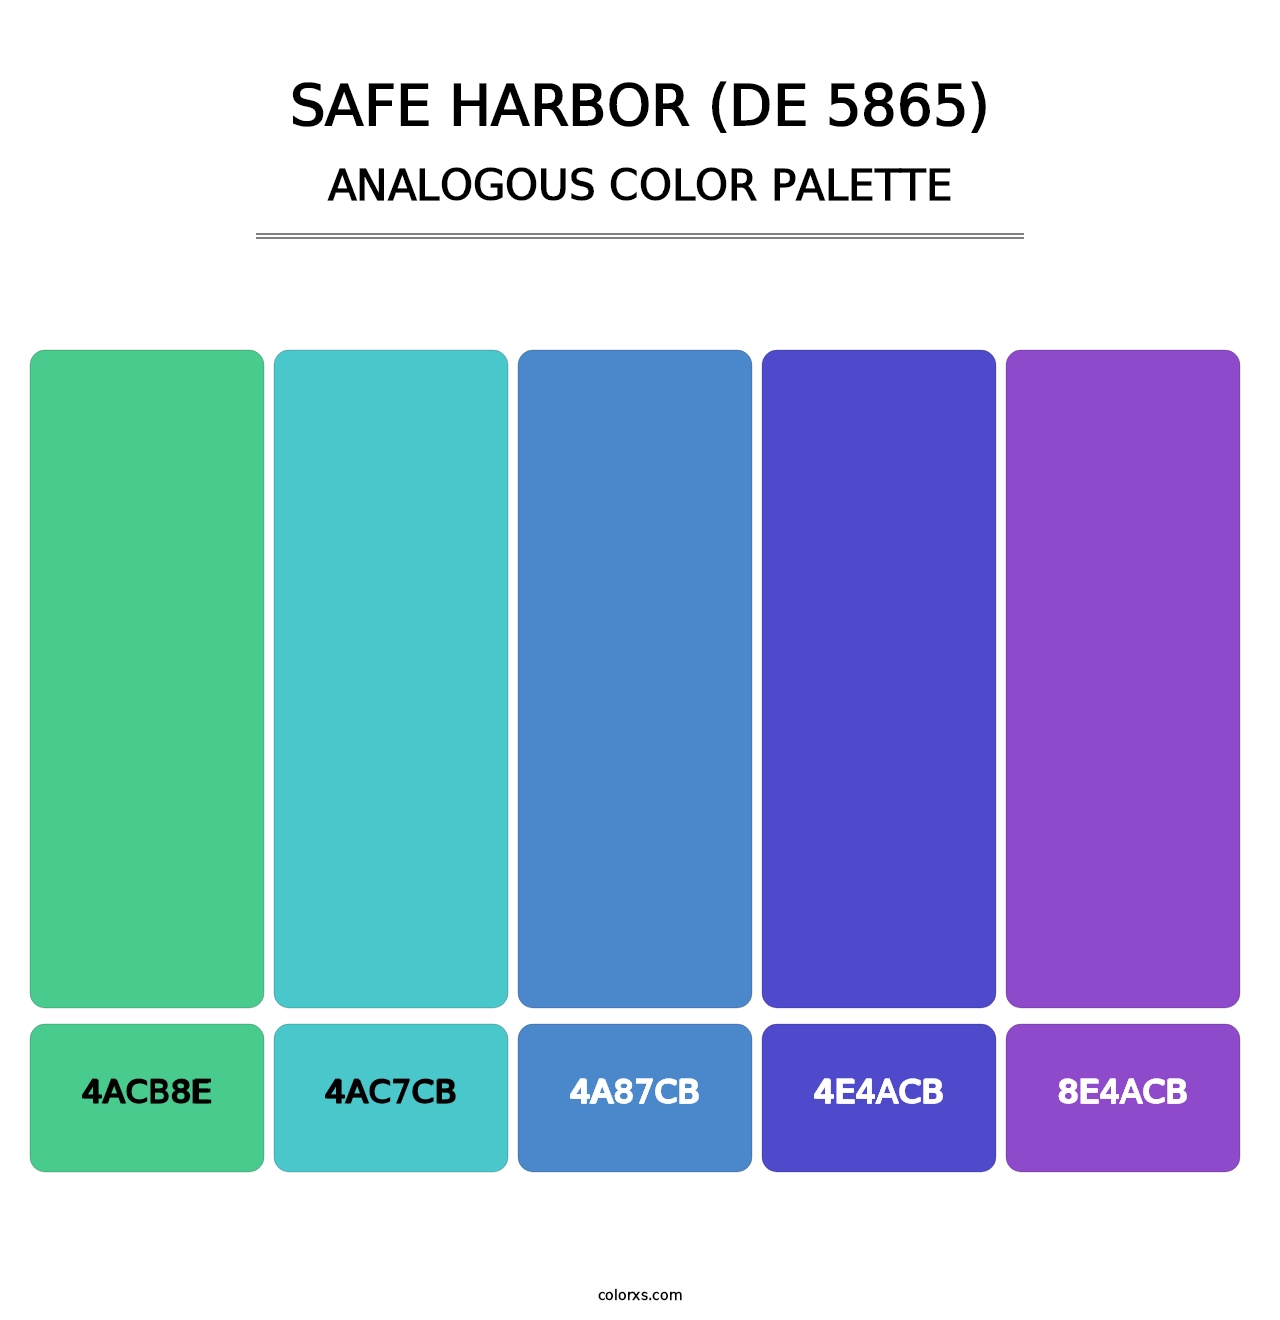 Safe Harbor (DE 5865) - Analogous Color Palette